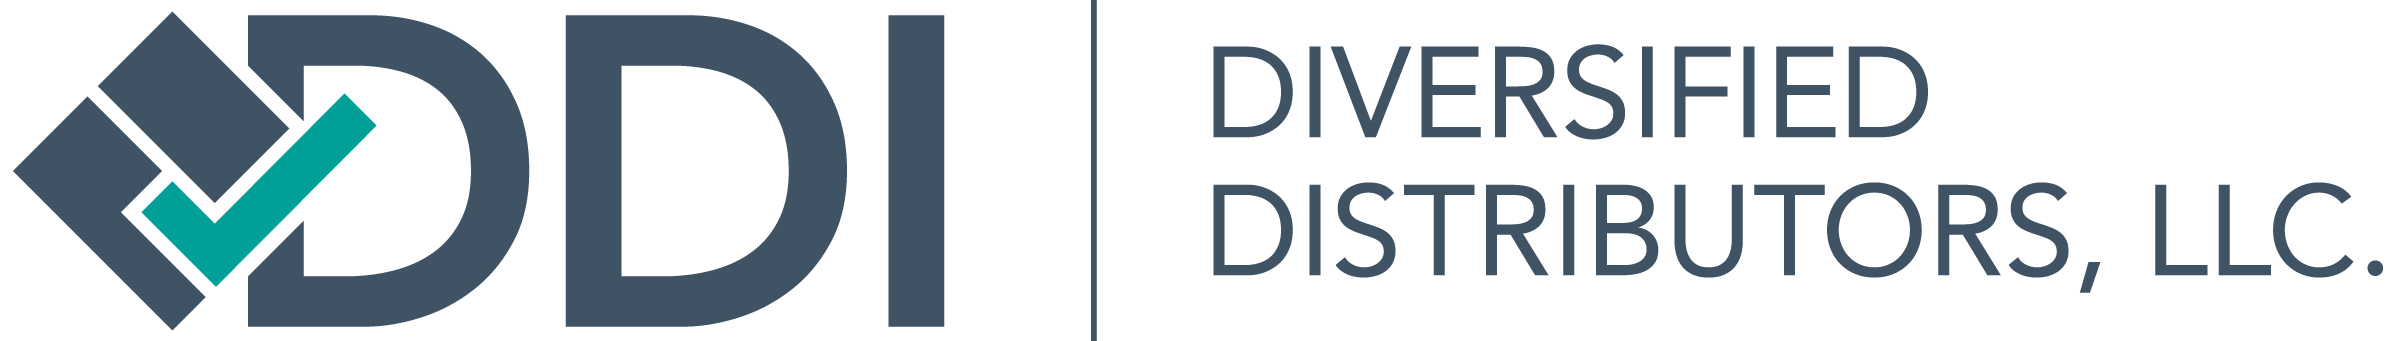 New-DDI-logo-crop